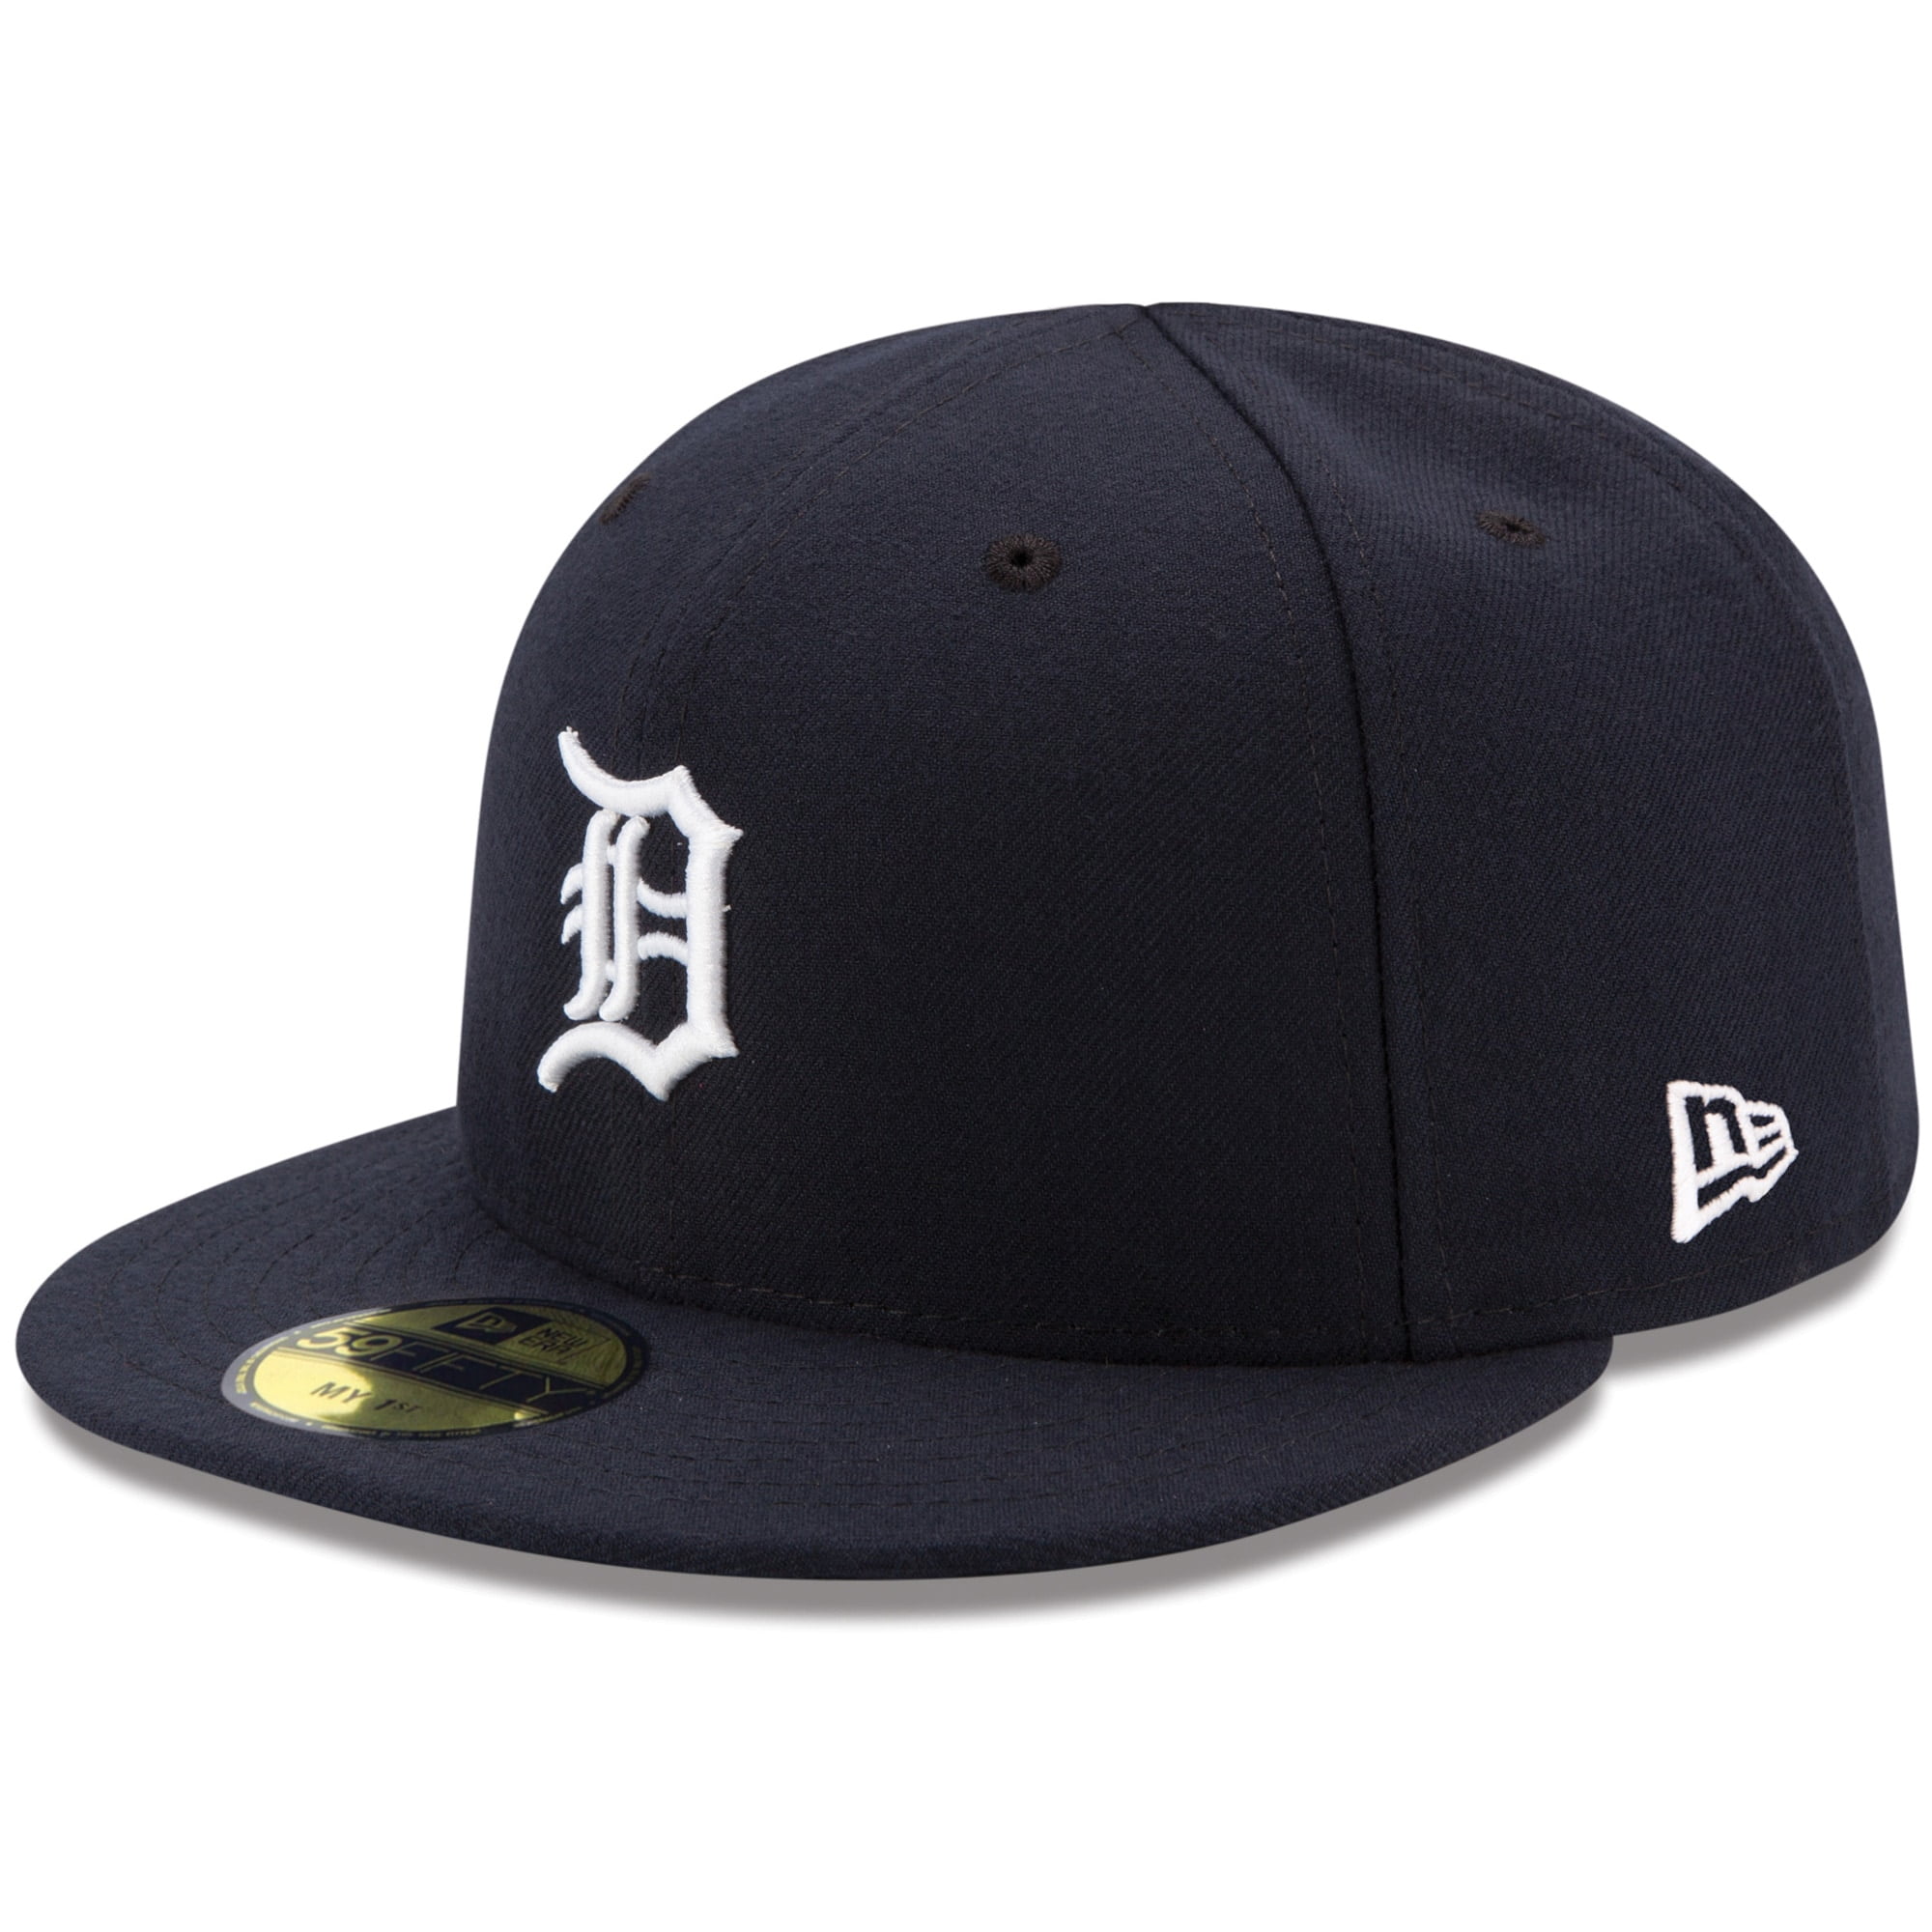 Gorra Ajustable De The League De Los Detroit Tigers New Era 